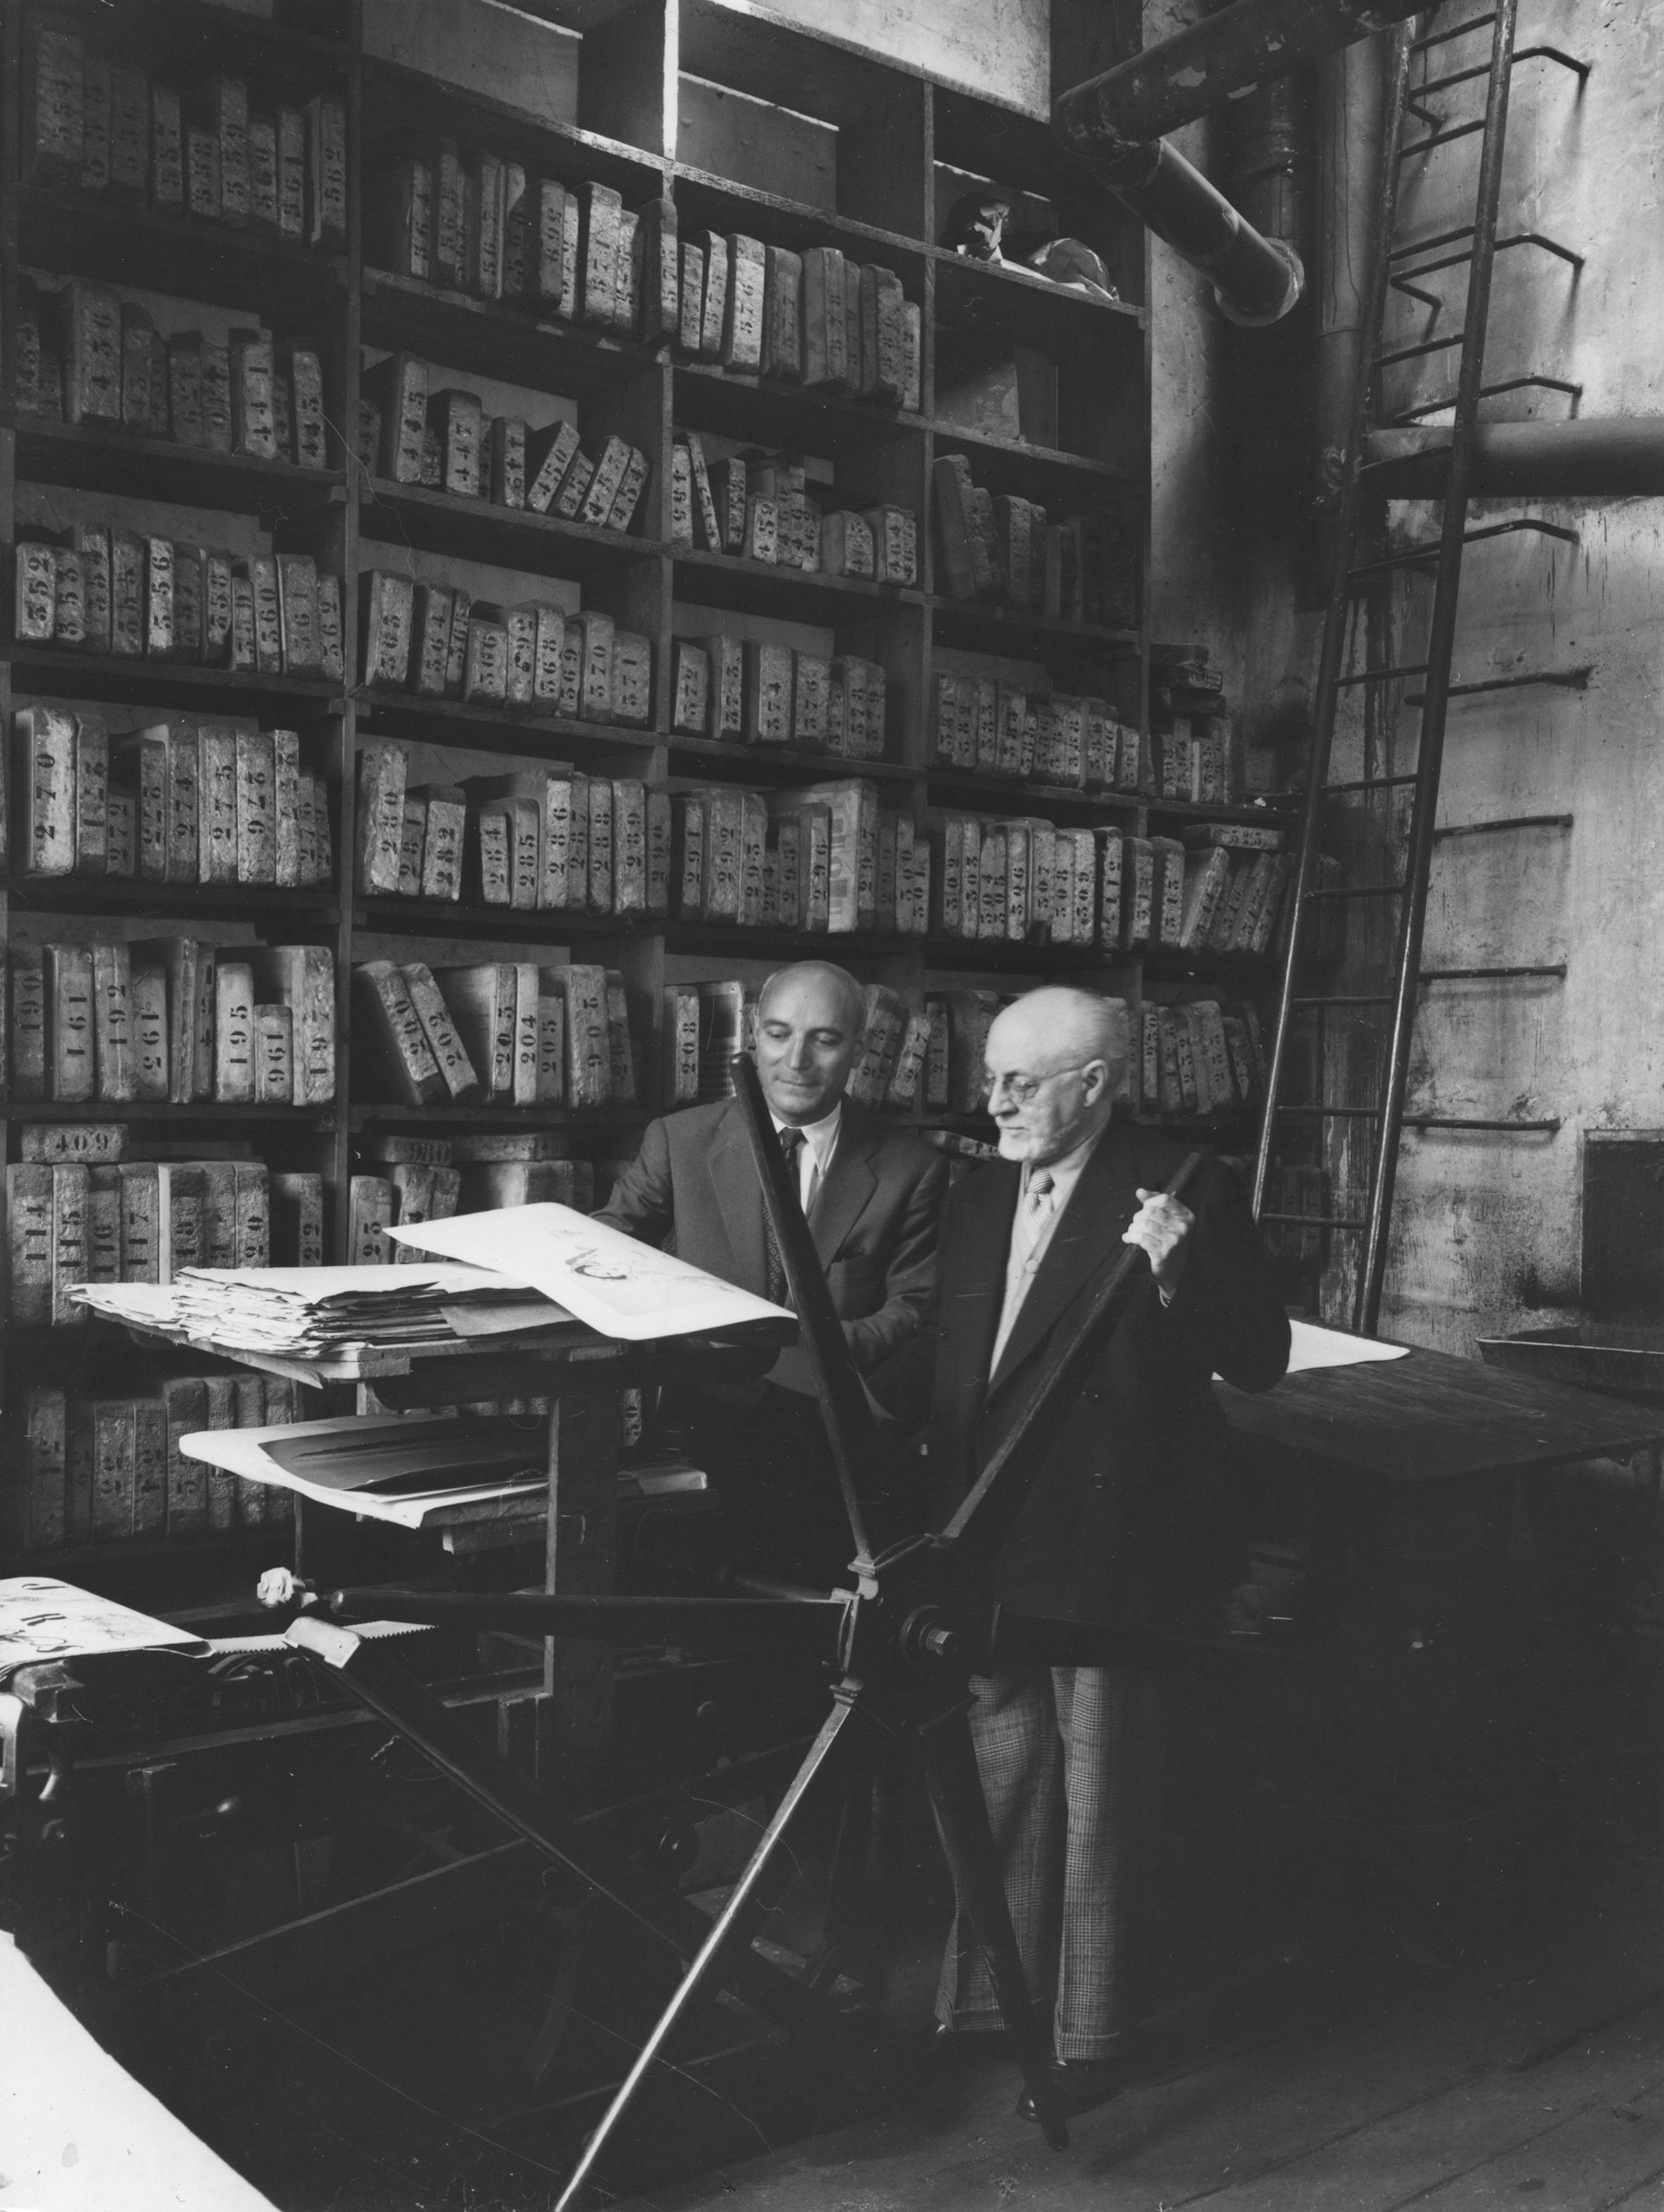 Fernand Mourlot and Henri Matisse in Galerie Mourlot printshop